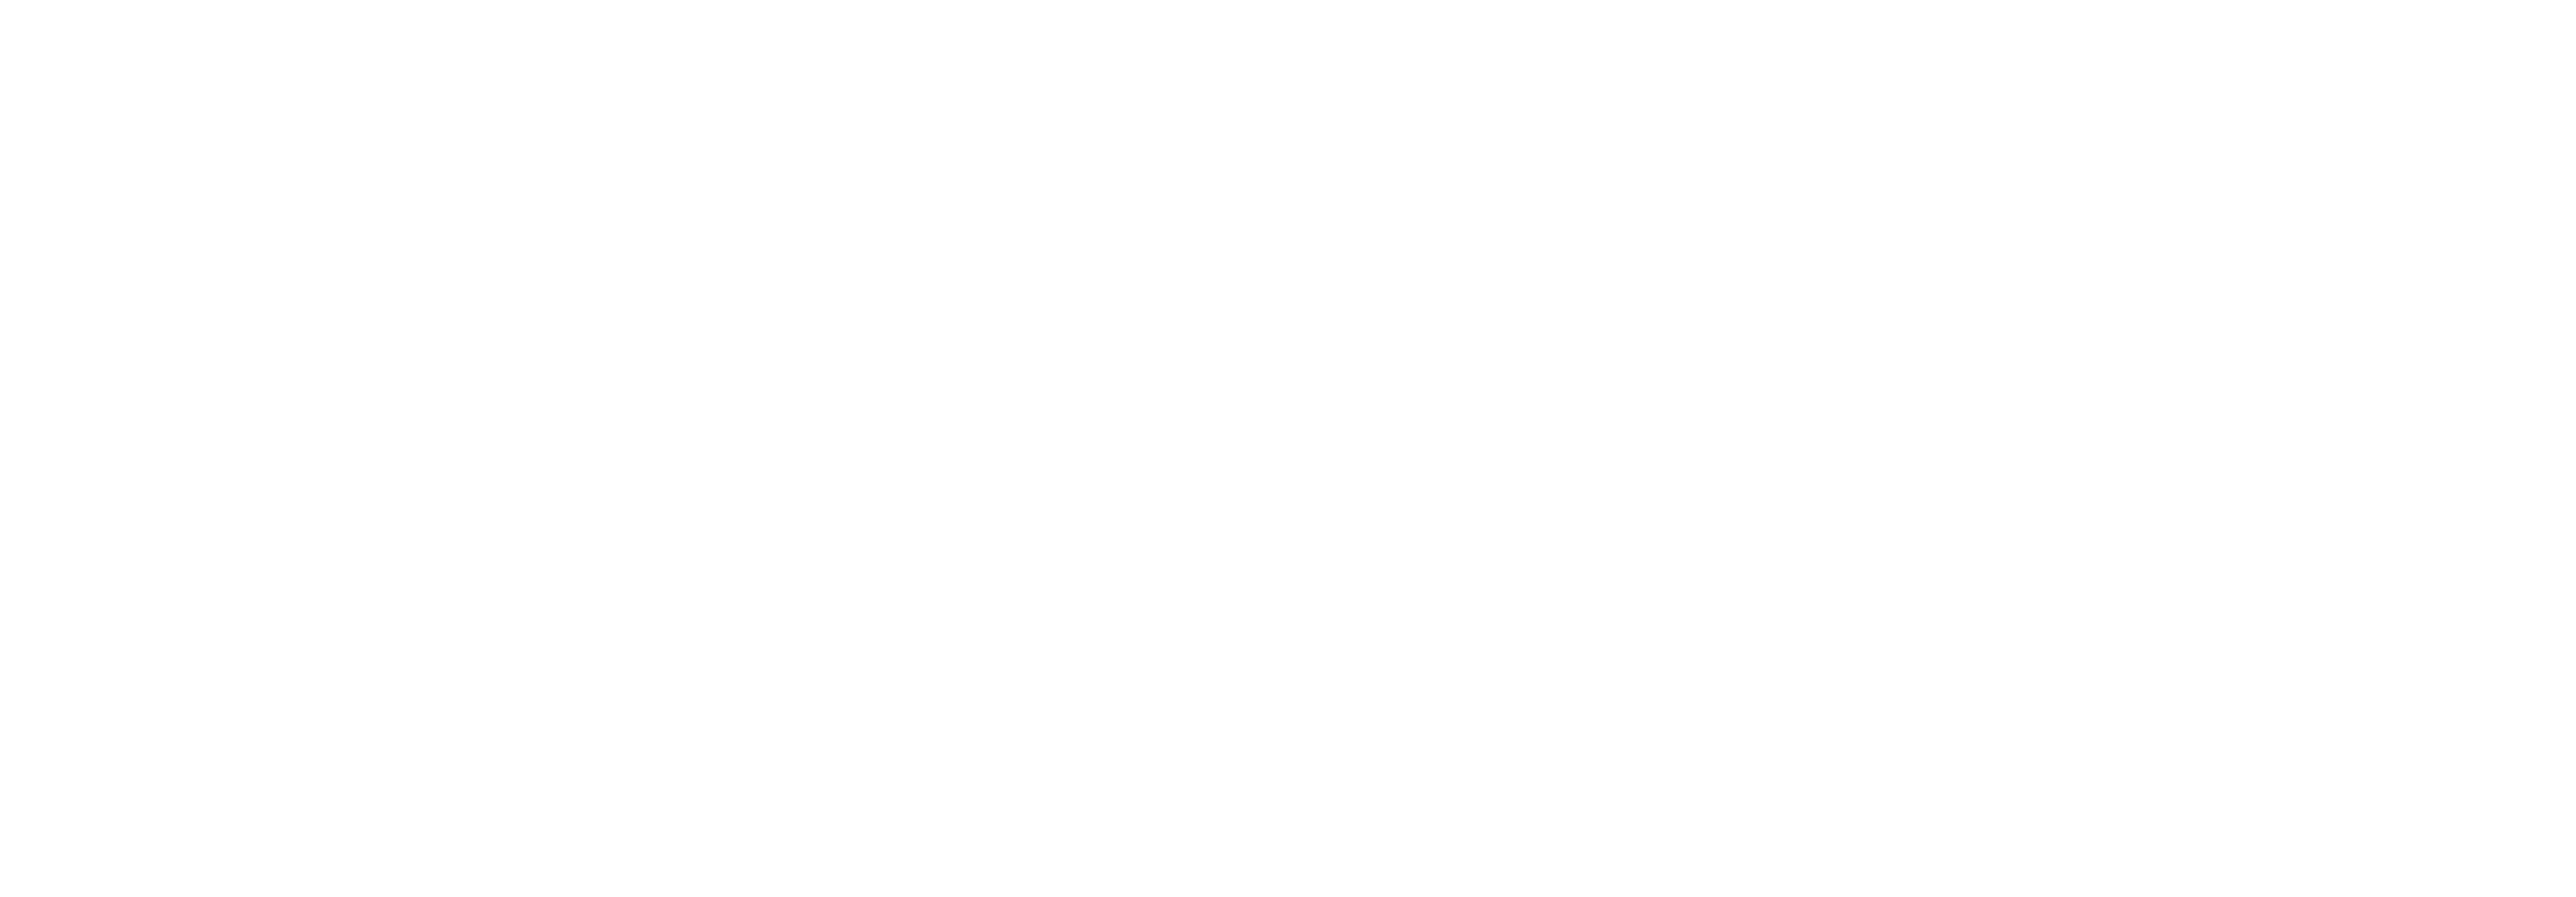 西九州新幹線開業記念 かもめ楽団 KAMOME GAKUDAN